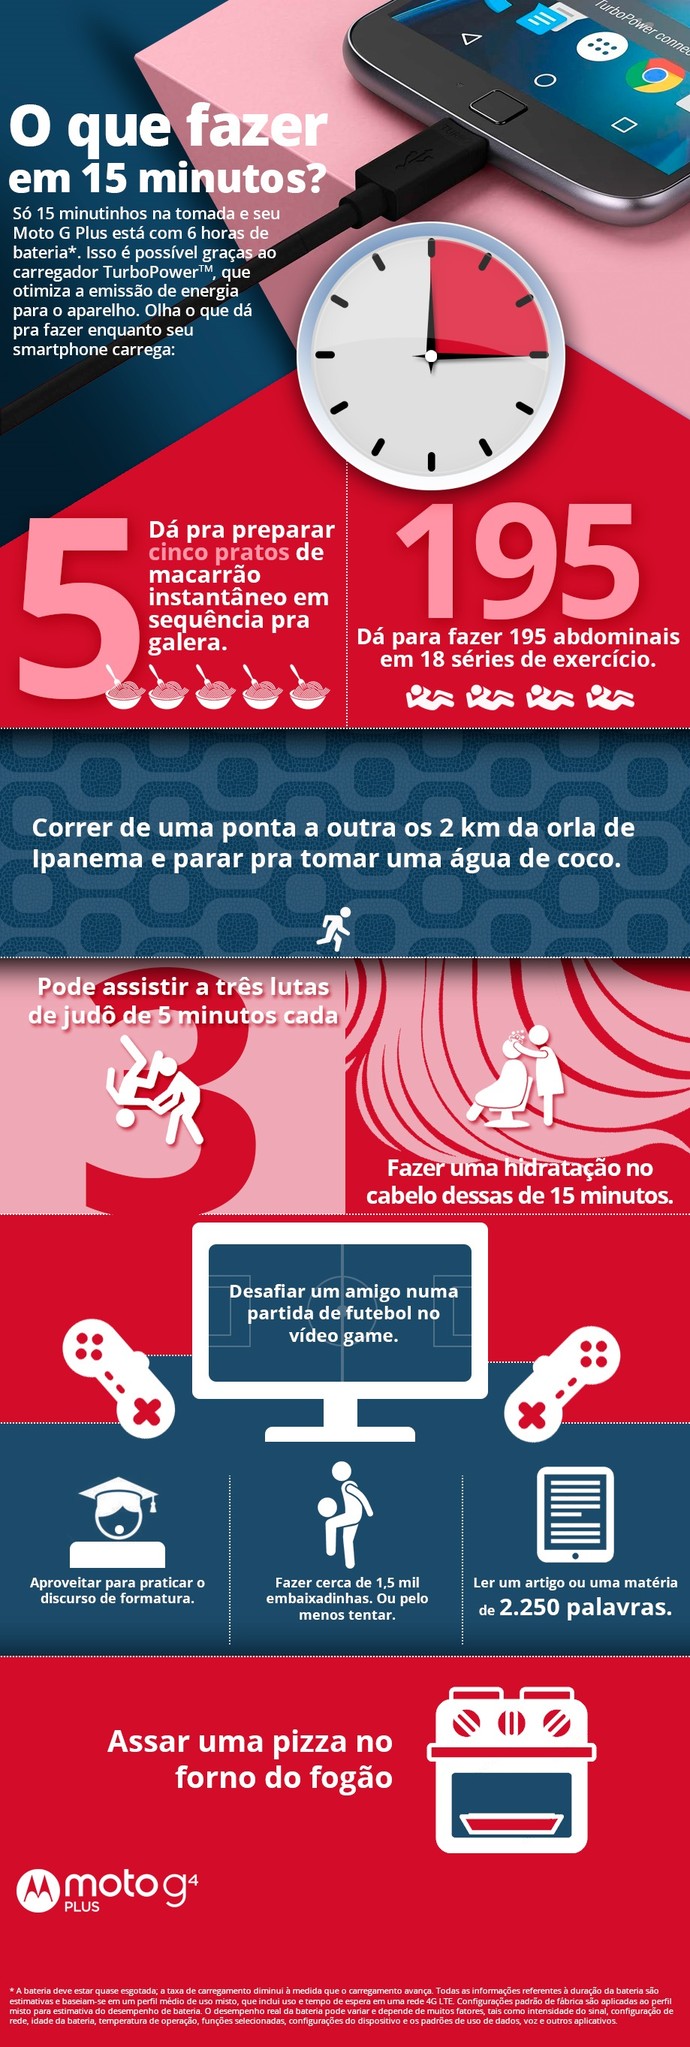 Motorola infográfico (Foto: Divulgação)